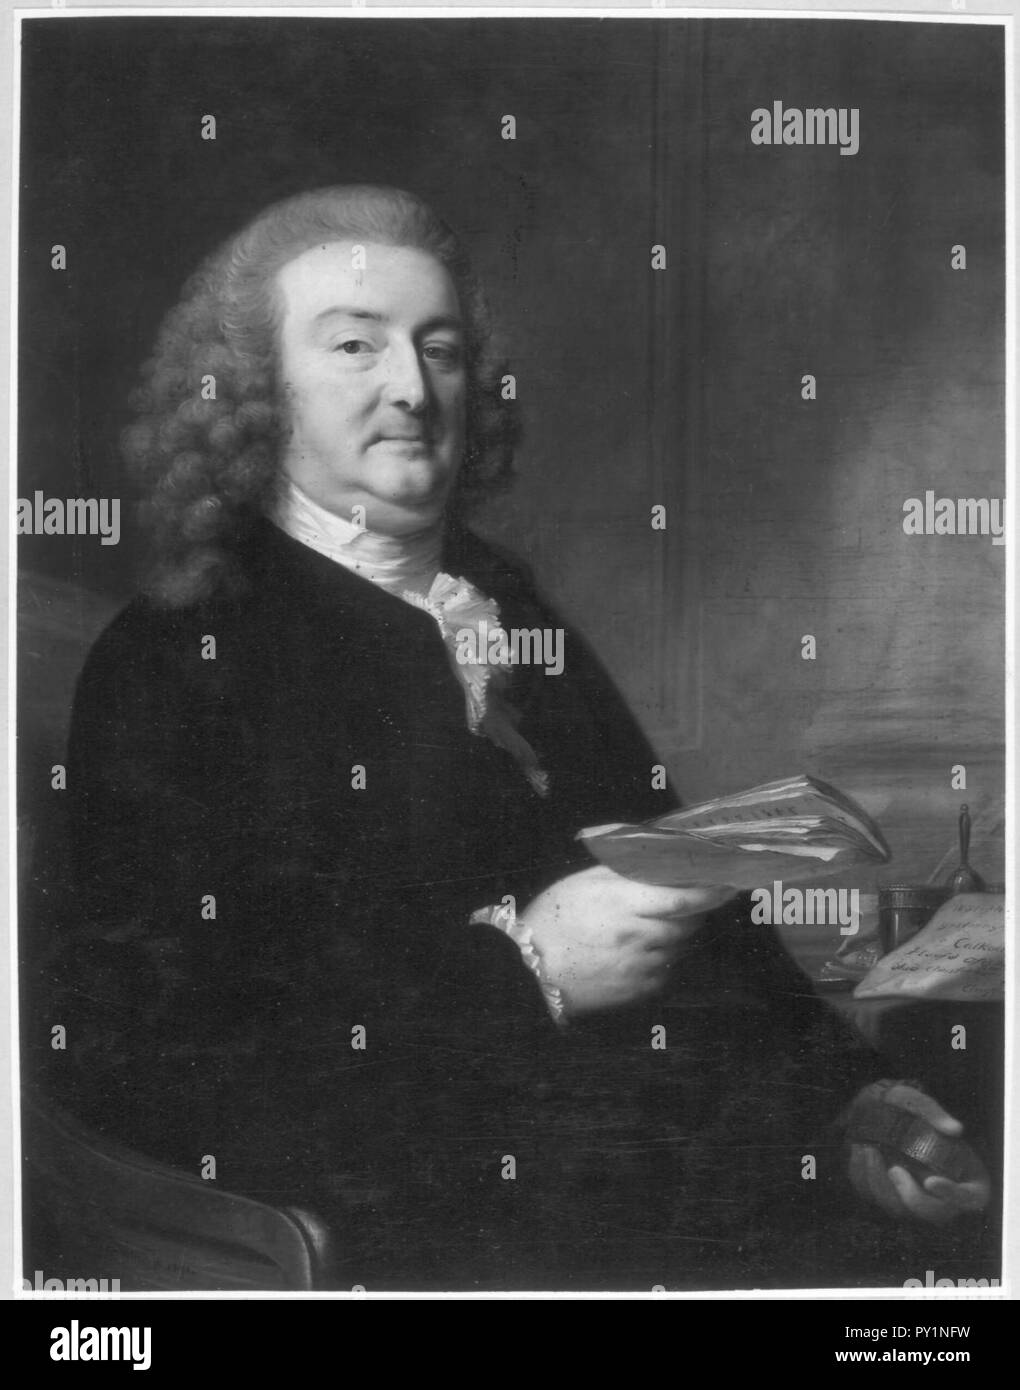 Abraham Calkoen (1729-1796) Johann Friedrich August Tischbein (1750-1812). Stock Photo